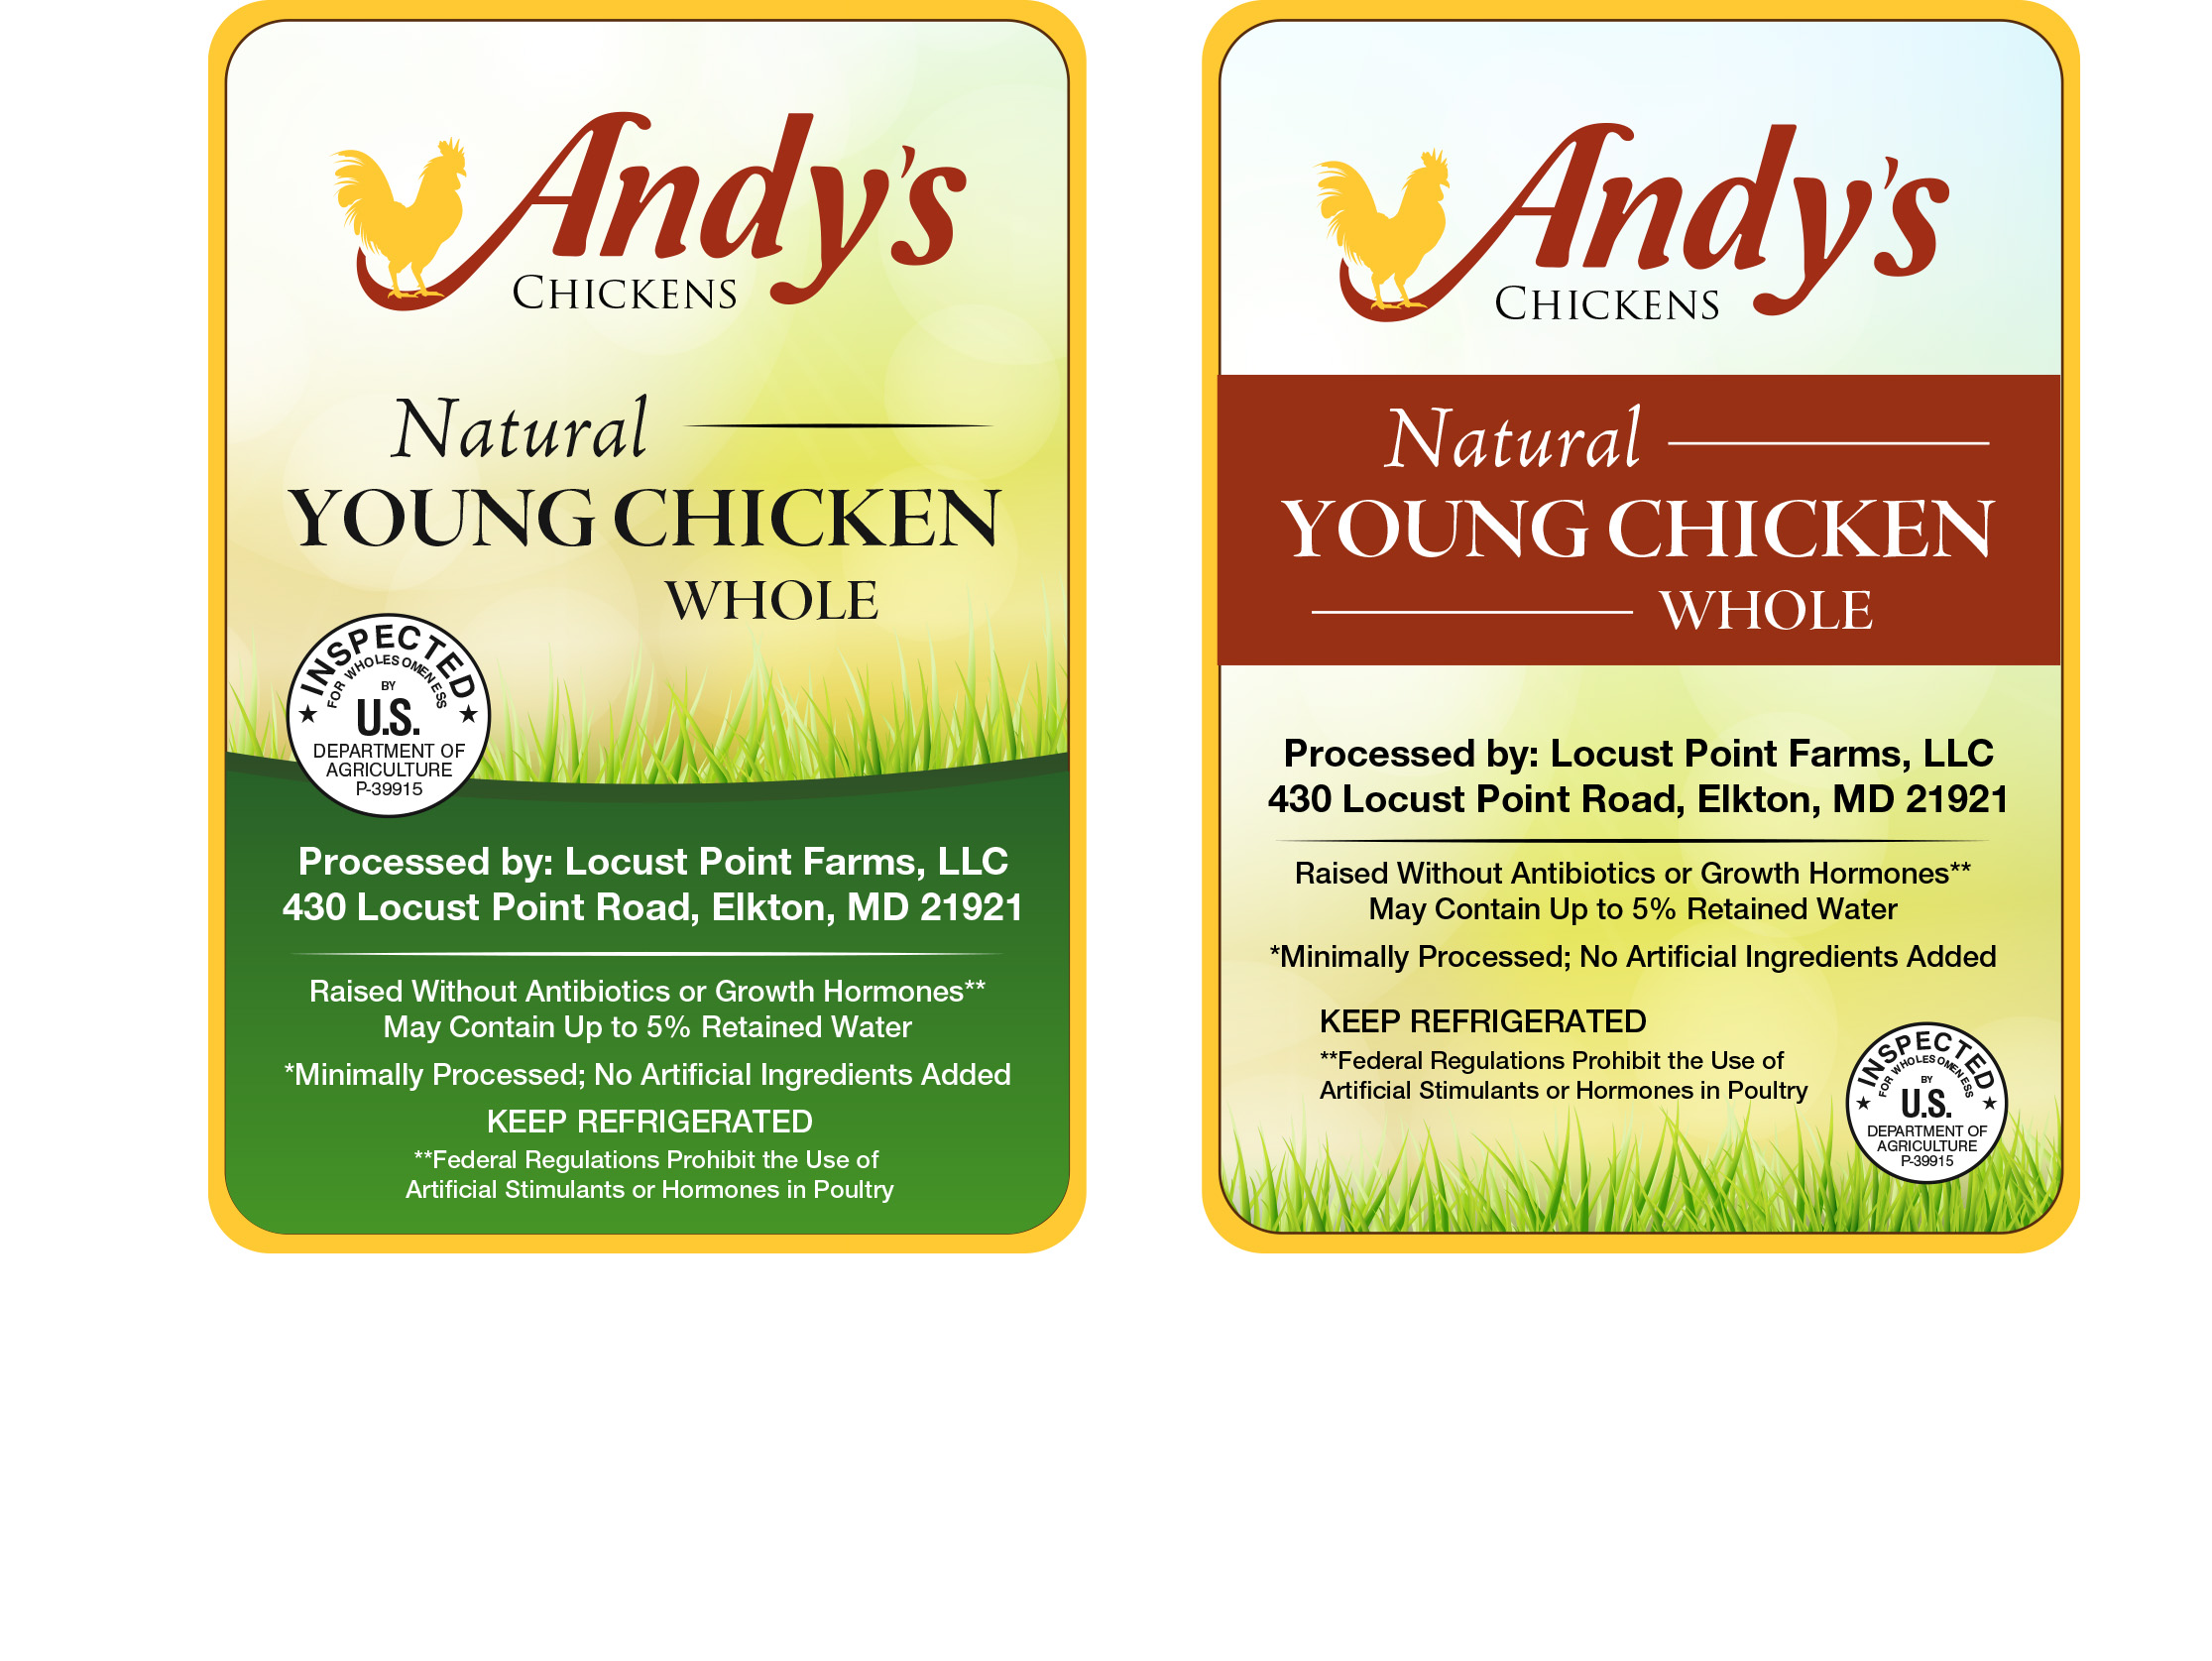 Chicken Labels